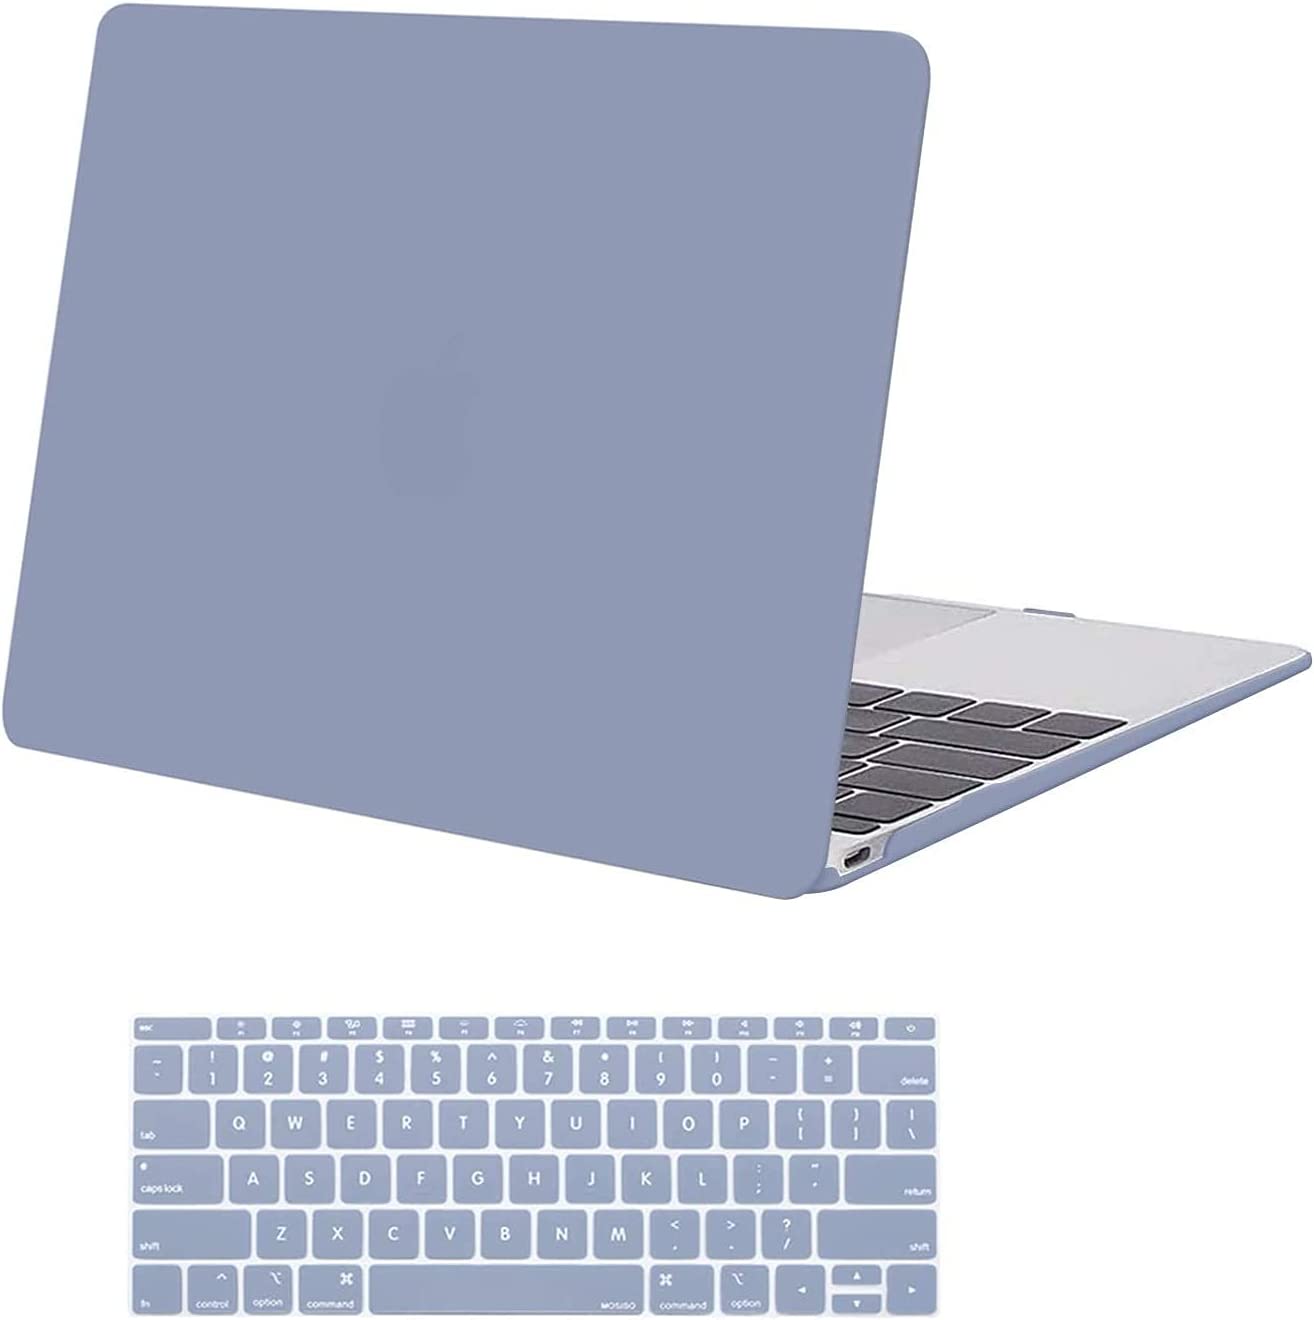 MacBook 12 inch (A1534)